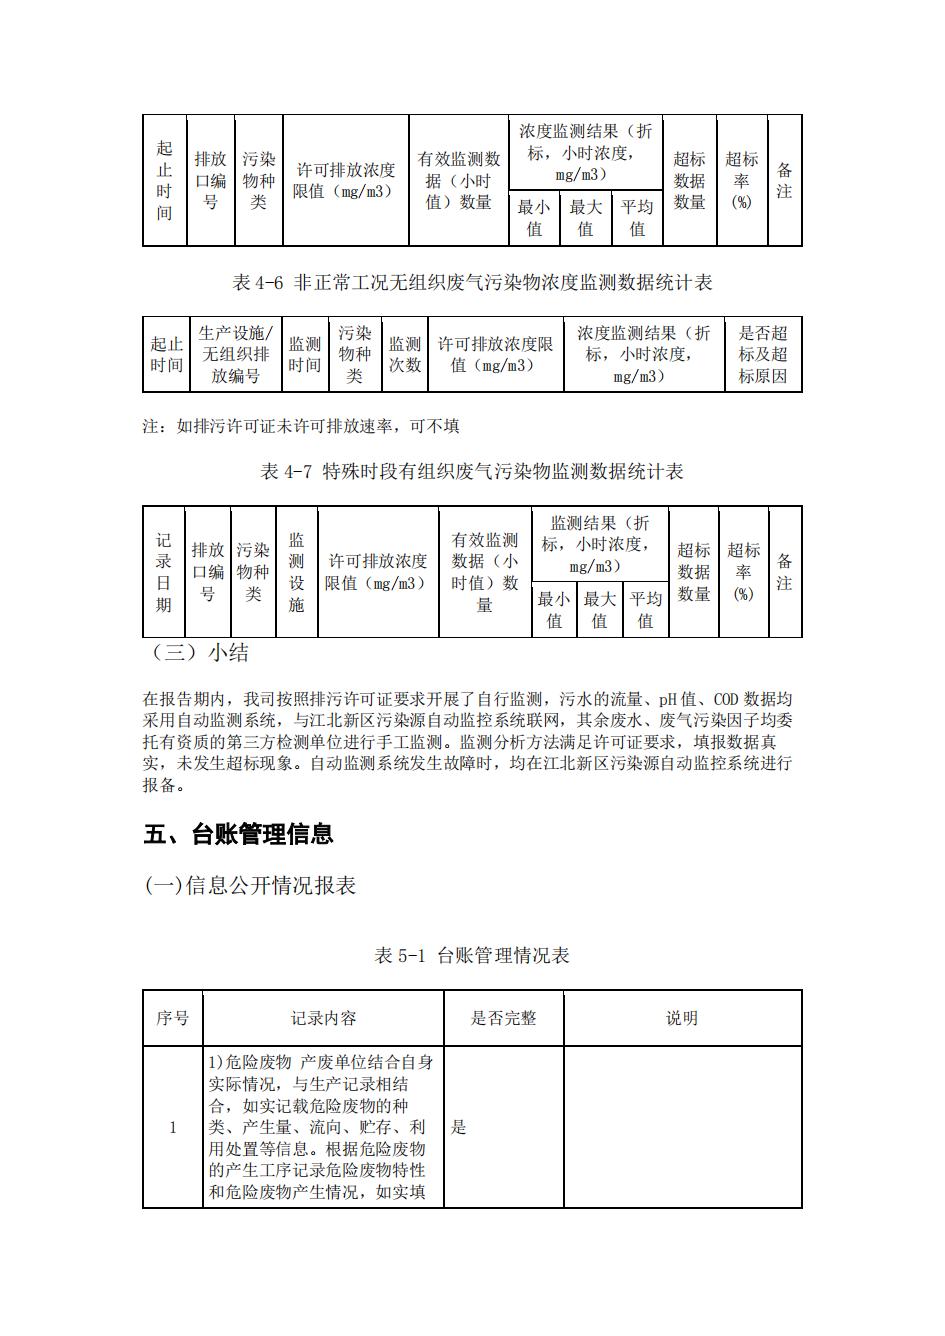 南京888集团电子游戏2022年环境信息披露_39.jpg